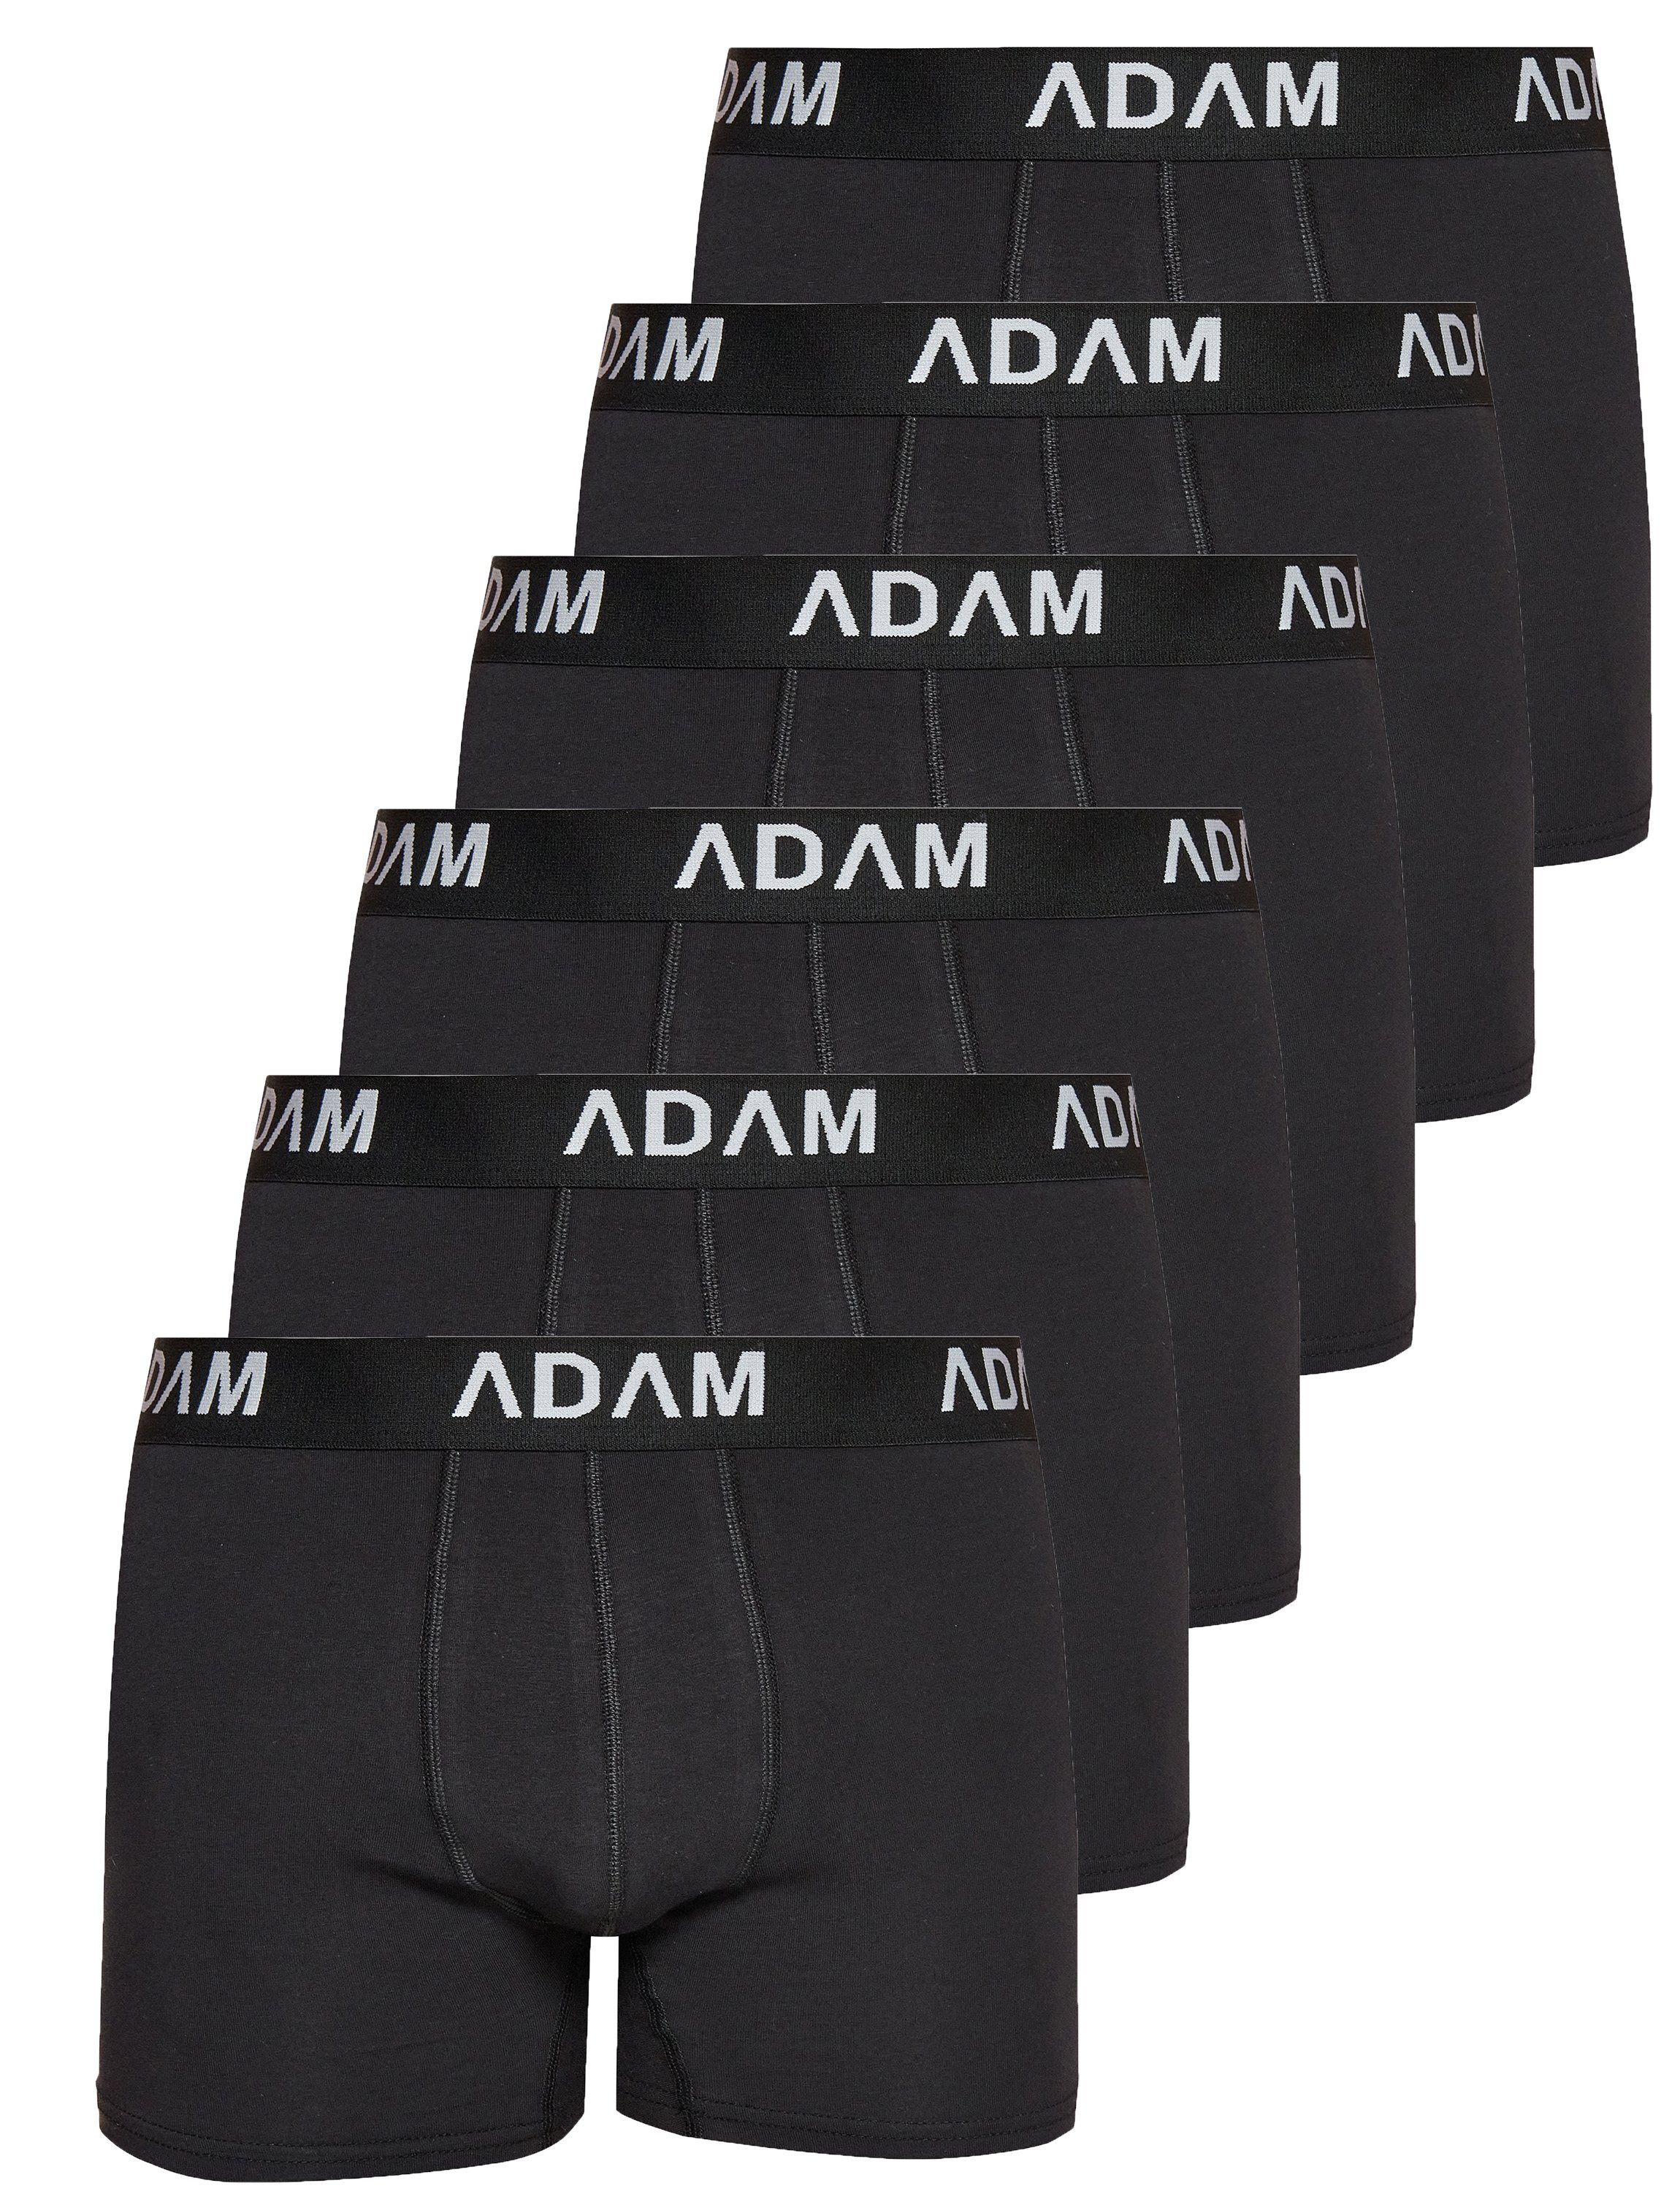 ADAM JEANS Boxershorts Boxer-1 (6-St., 2er Set, 6er Set, 8er Set, 10er Set, 12er Set) Boxershorts Herren Boxer Shorts Männer Unterhosen Trunks Underwear